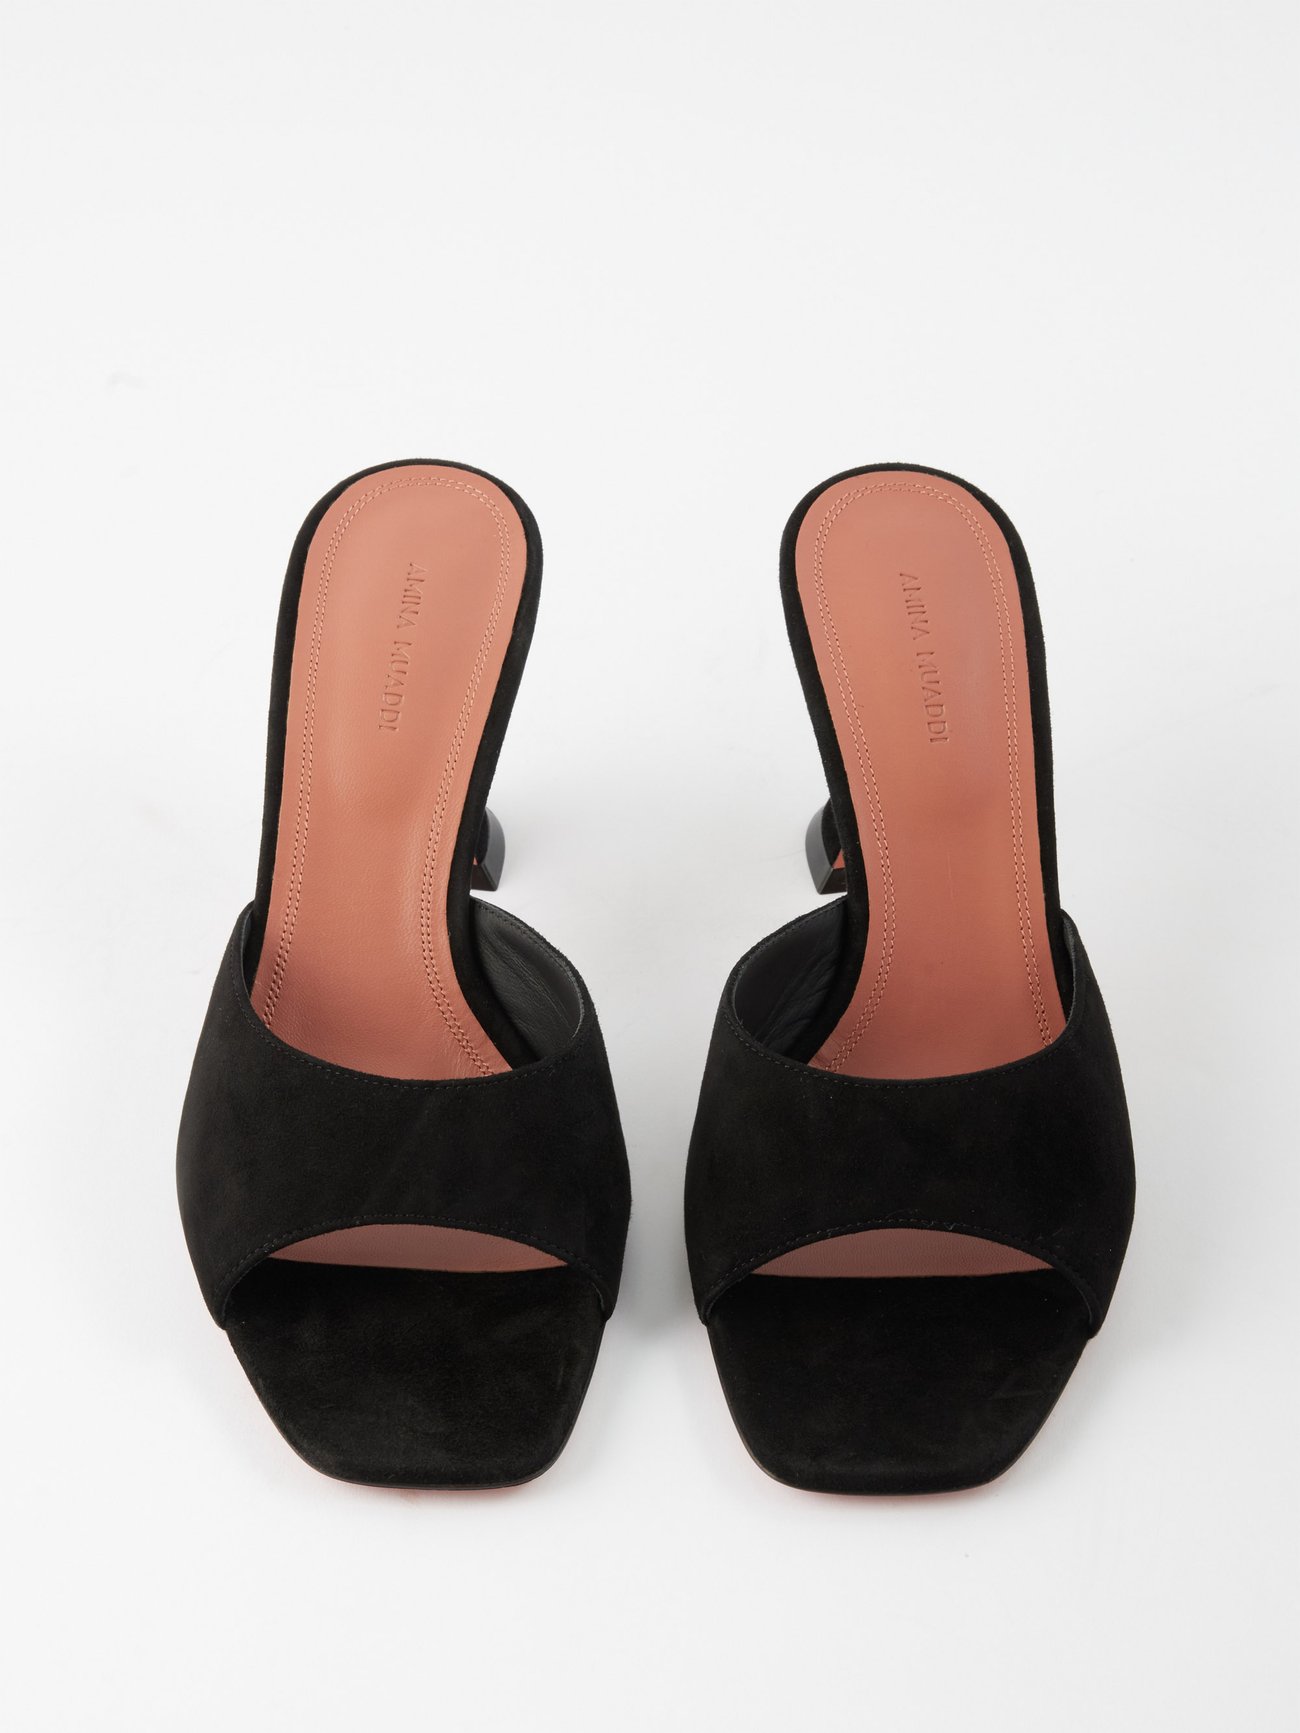 Amina Muaddi, Lupita 70 black suede mule sandals